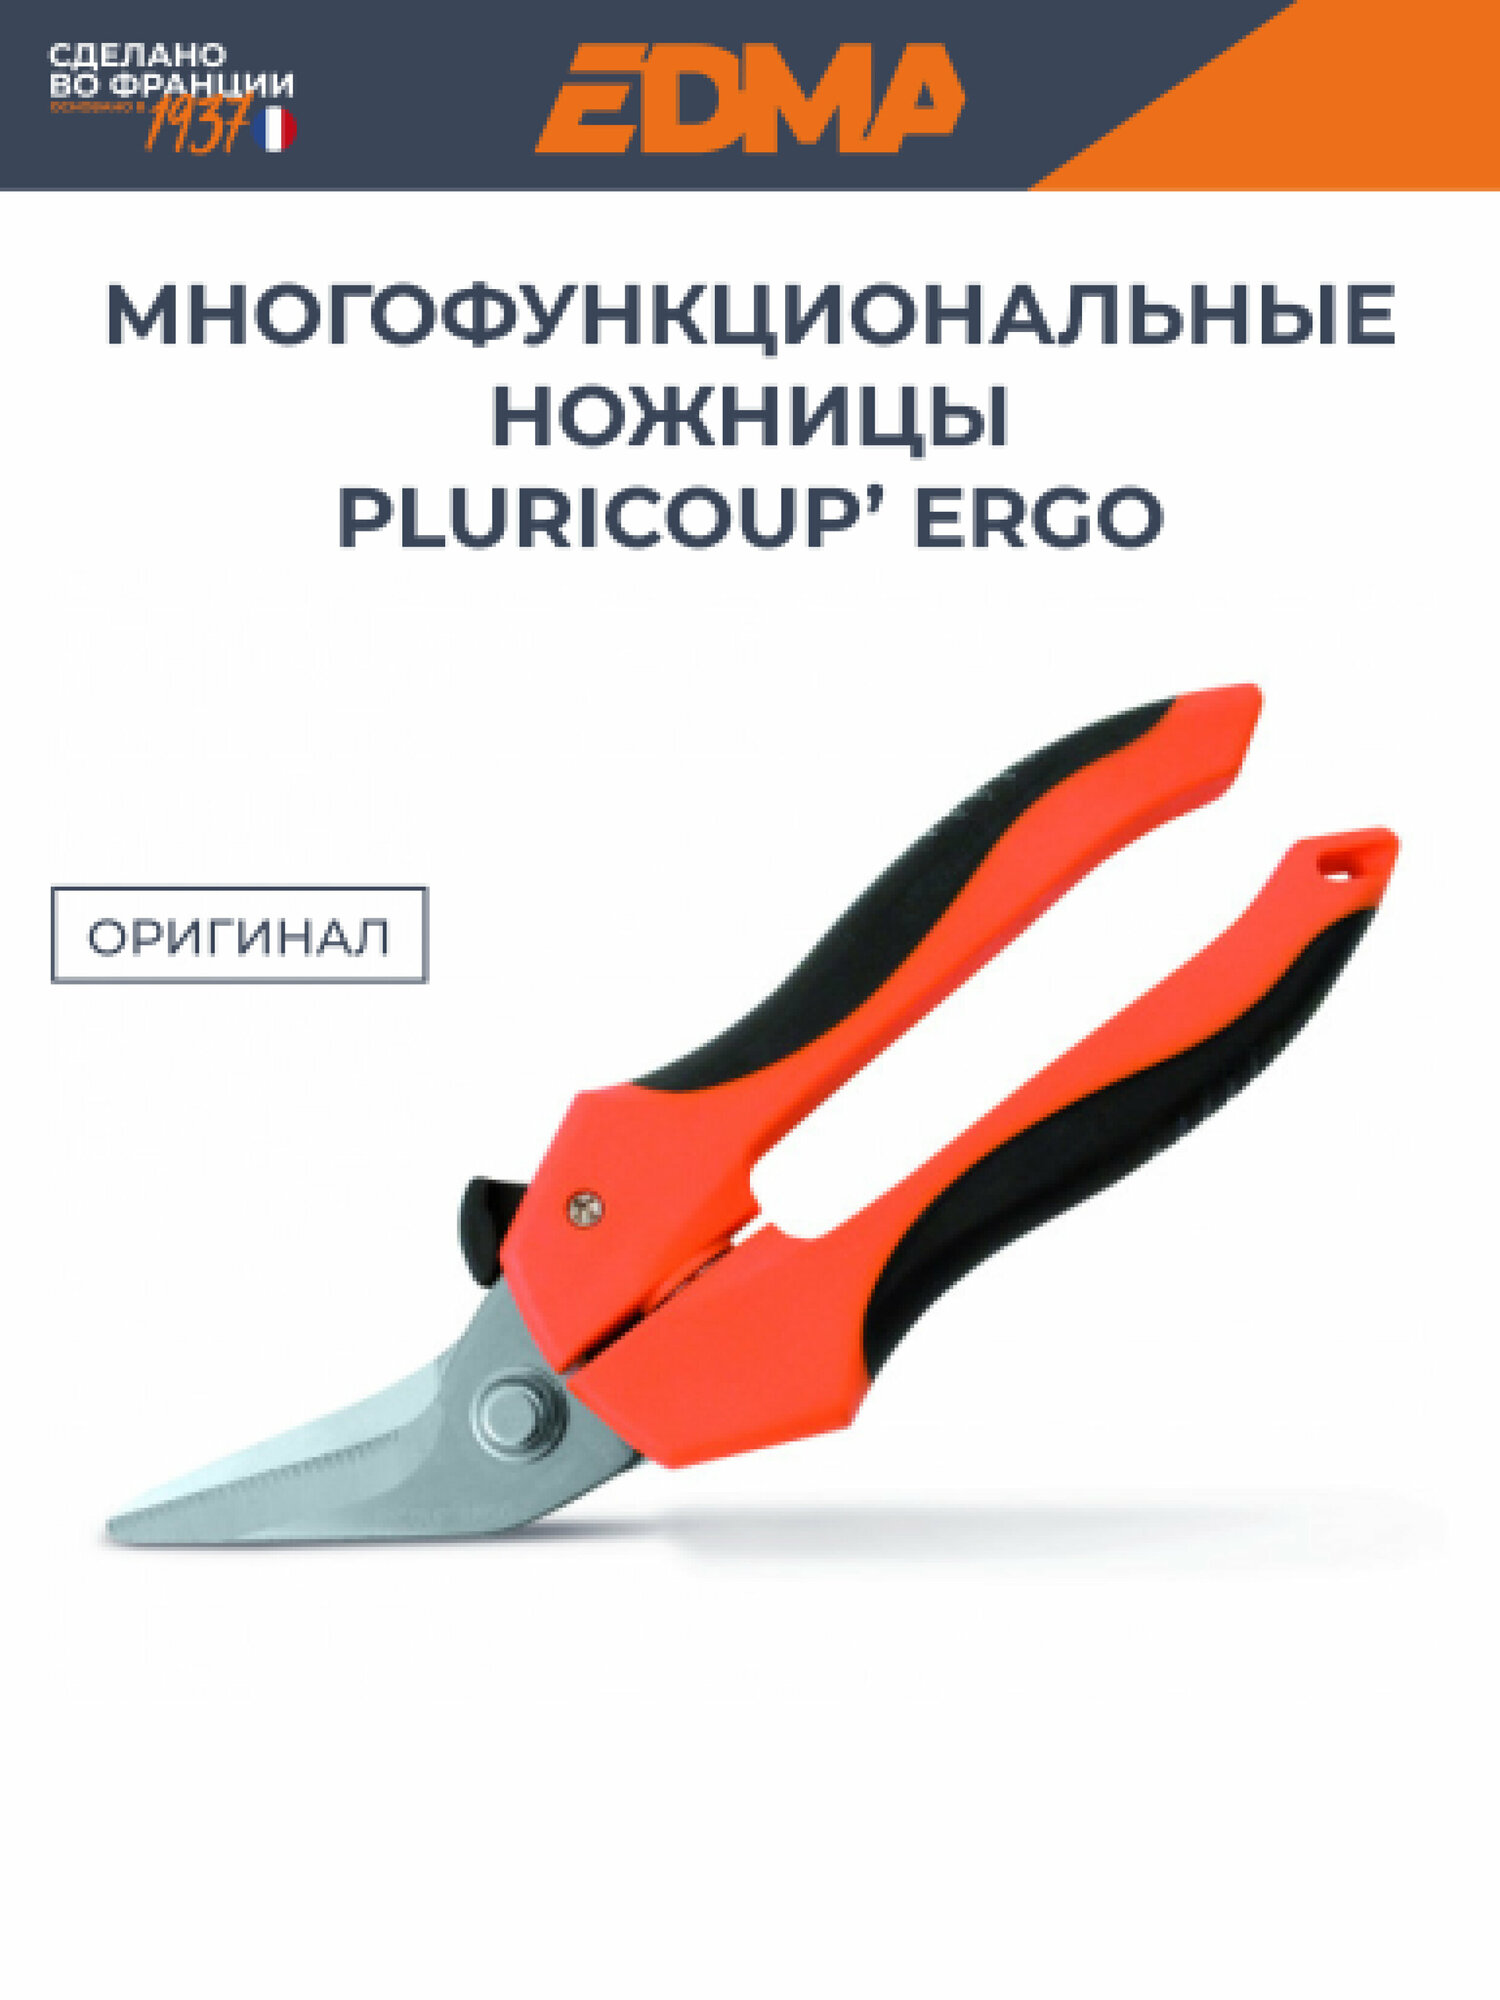 Многофункциональные ножницы EDMA Pluricoup' Ergo с наклонным лезвием 42 мм